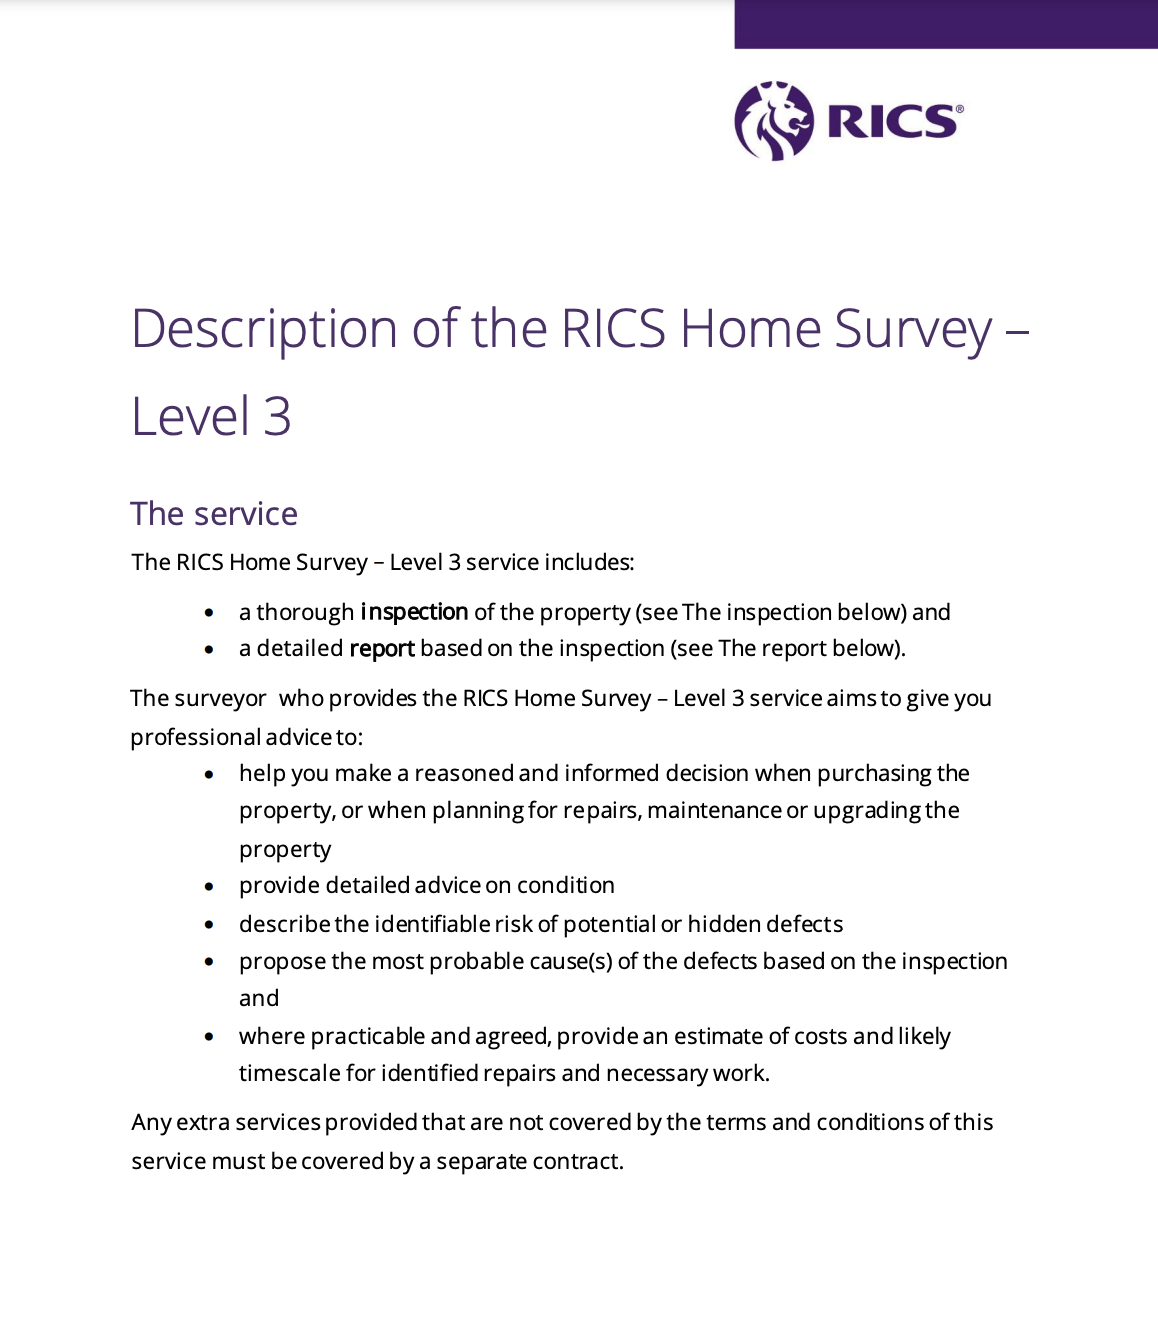 It is a description of the rics home survey - level 3.